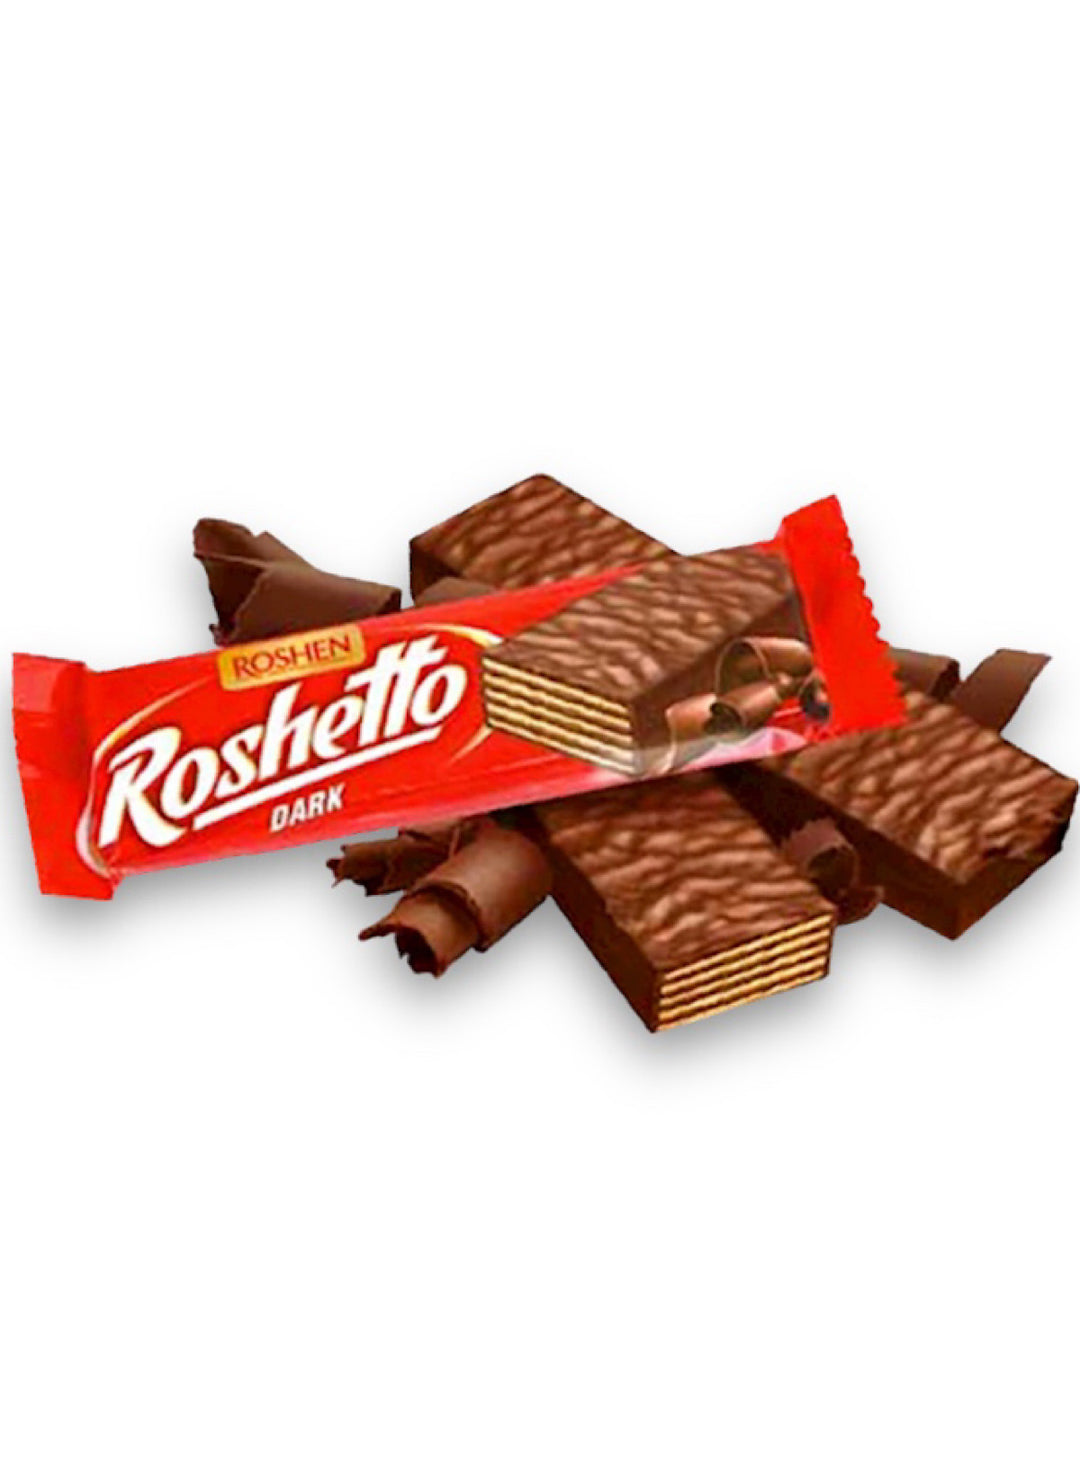 Dark Chocolate Wafer Roshetto - Roshen - 34g